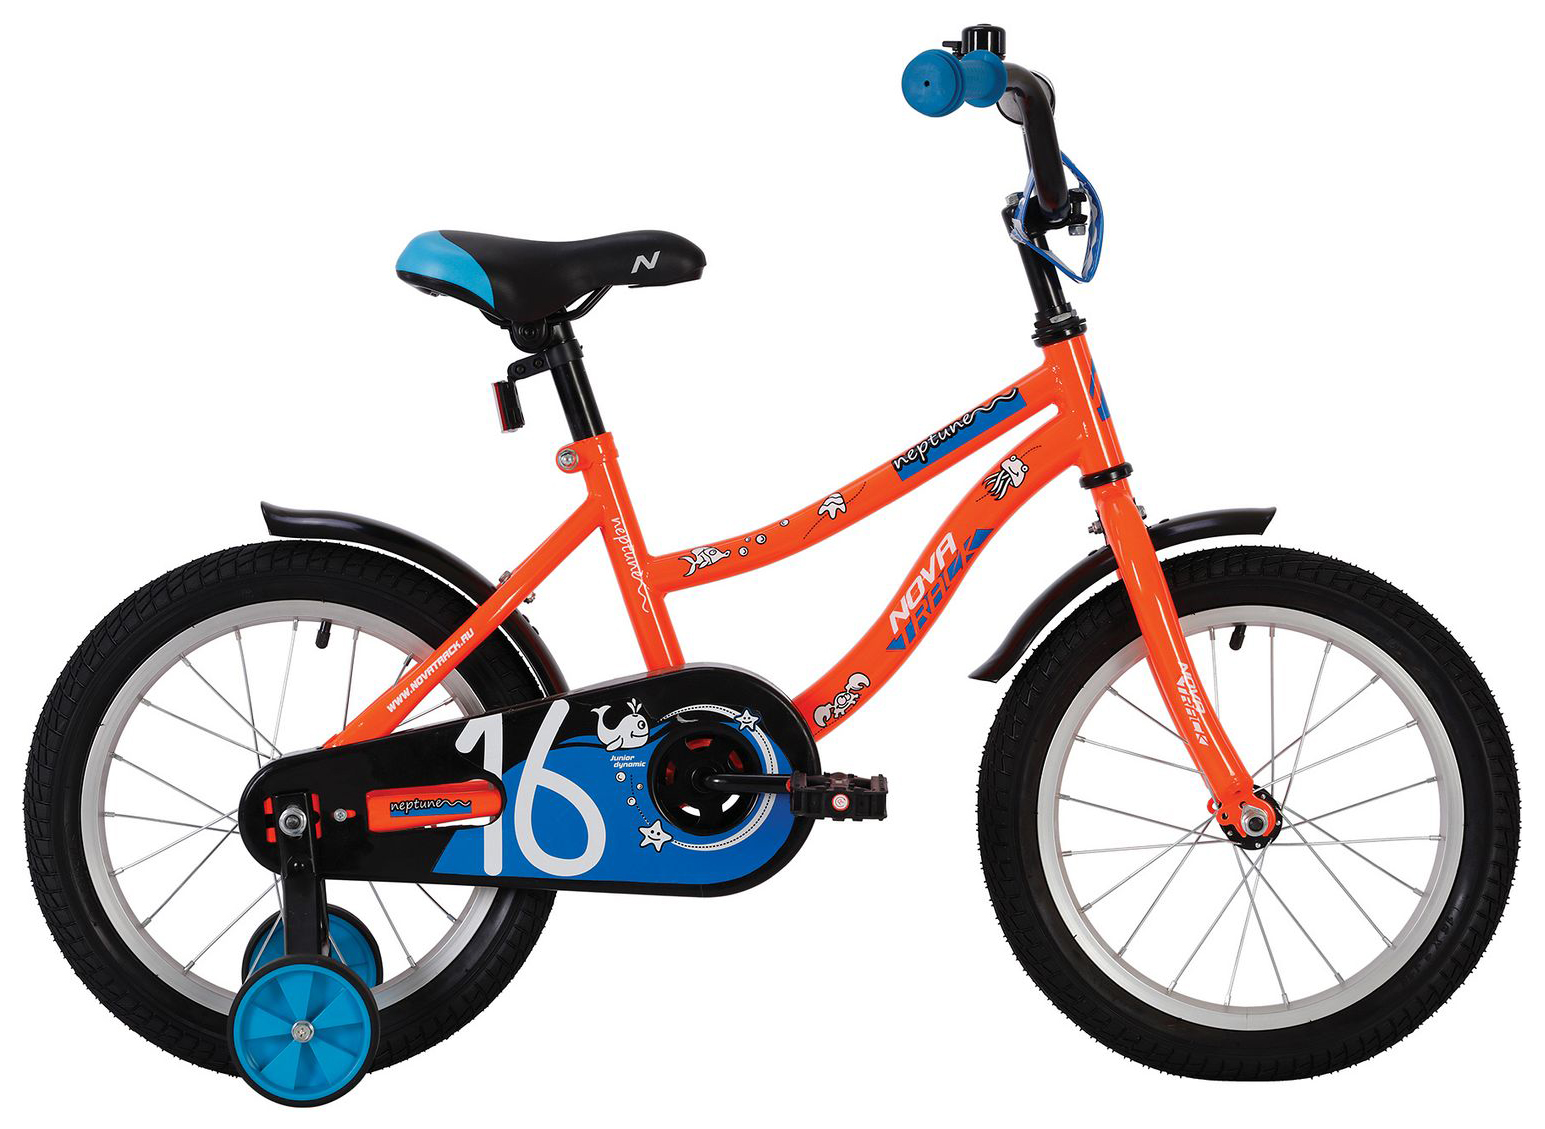  Отзывы о Детском велосипеде Novatrack Neptune 14 2020